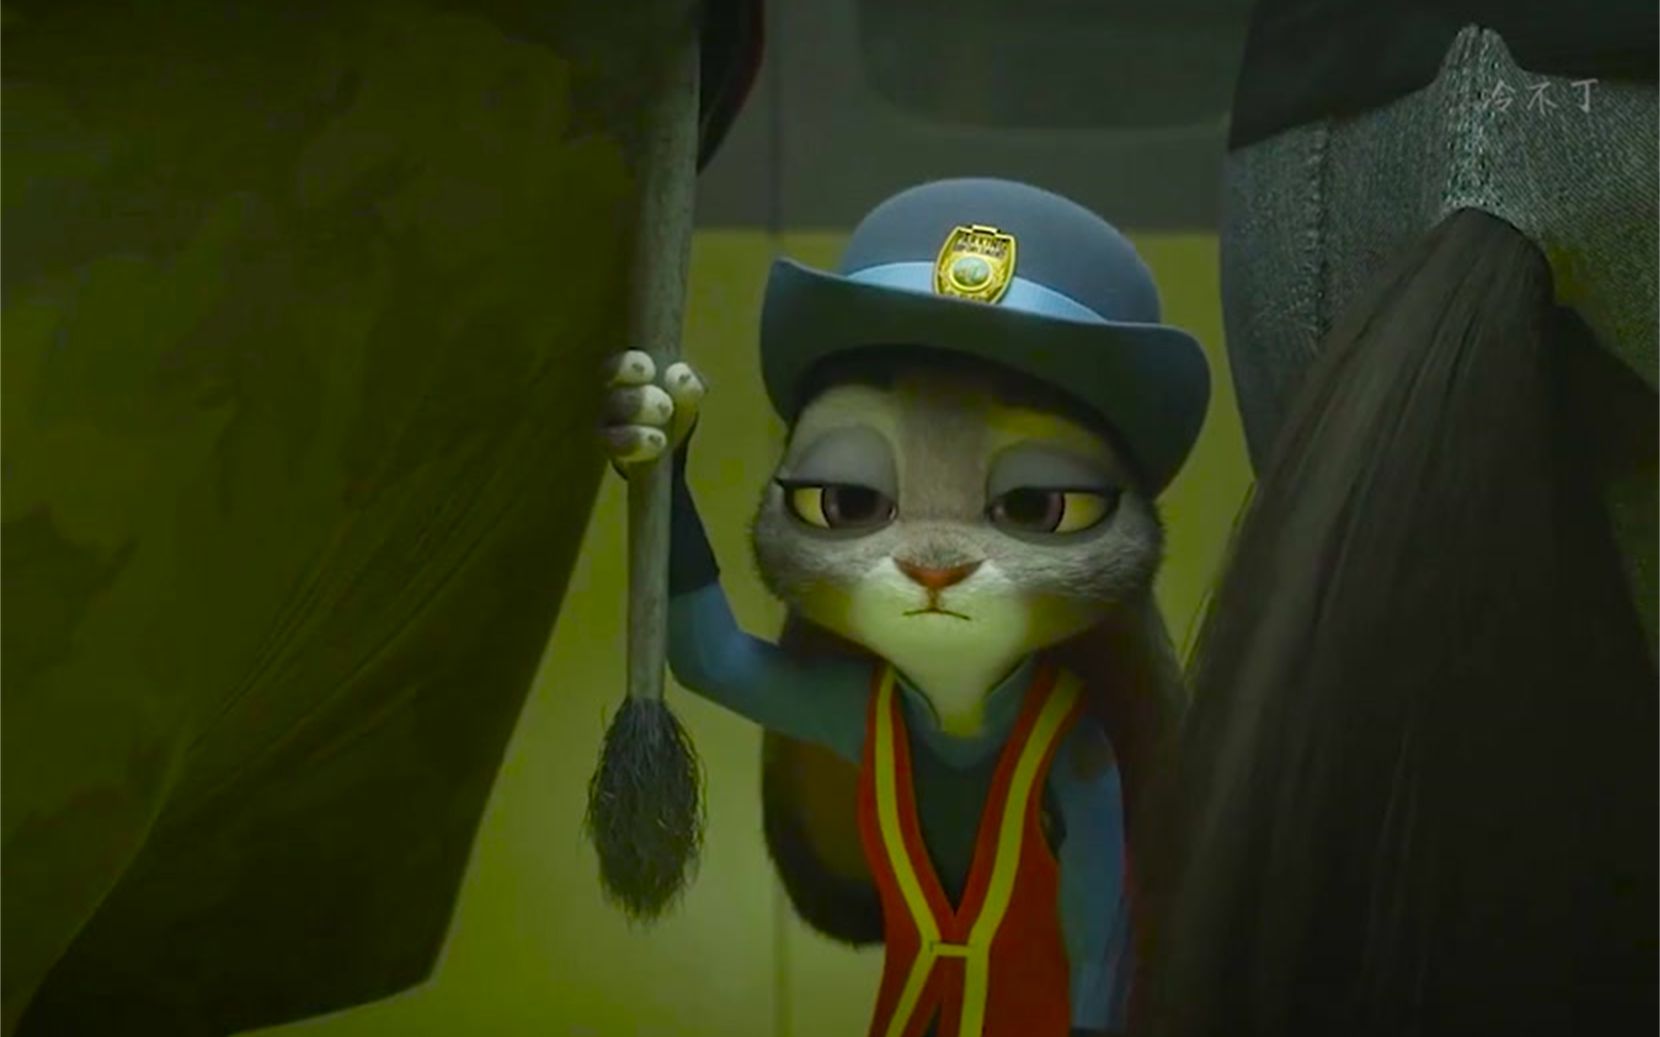 【疯狂动物城】孤独的兔子警官想家了,还好最后遇到了她的狐尼克